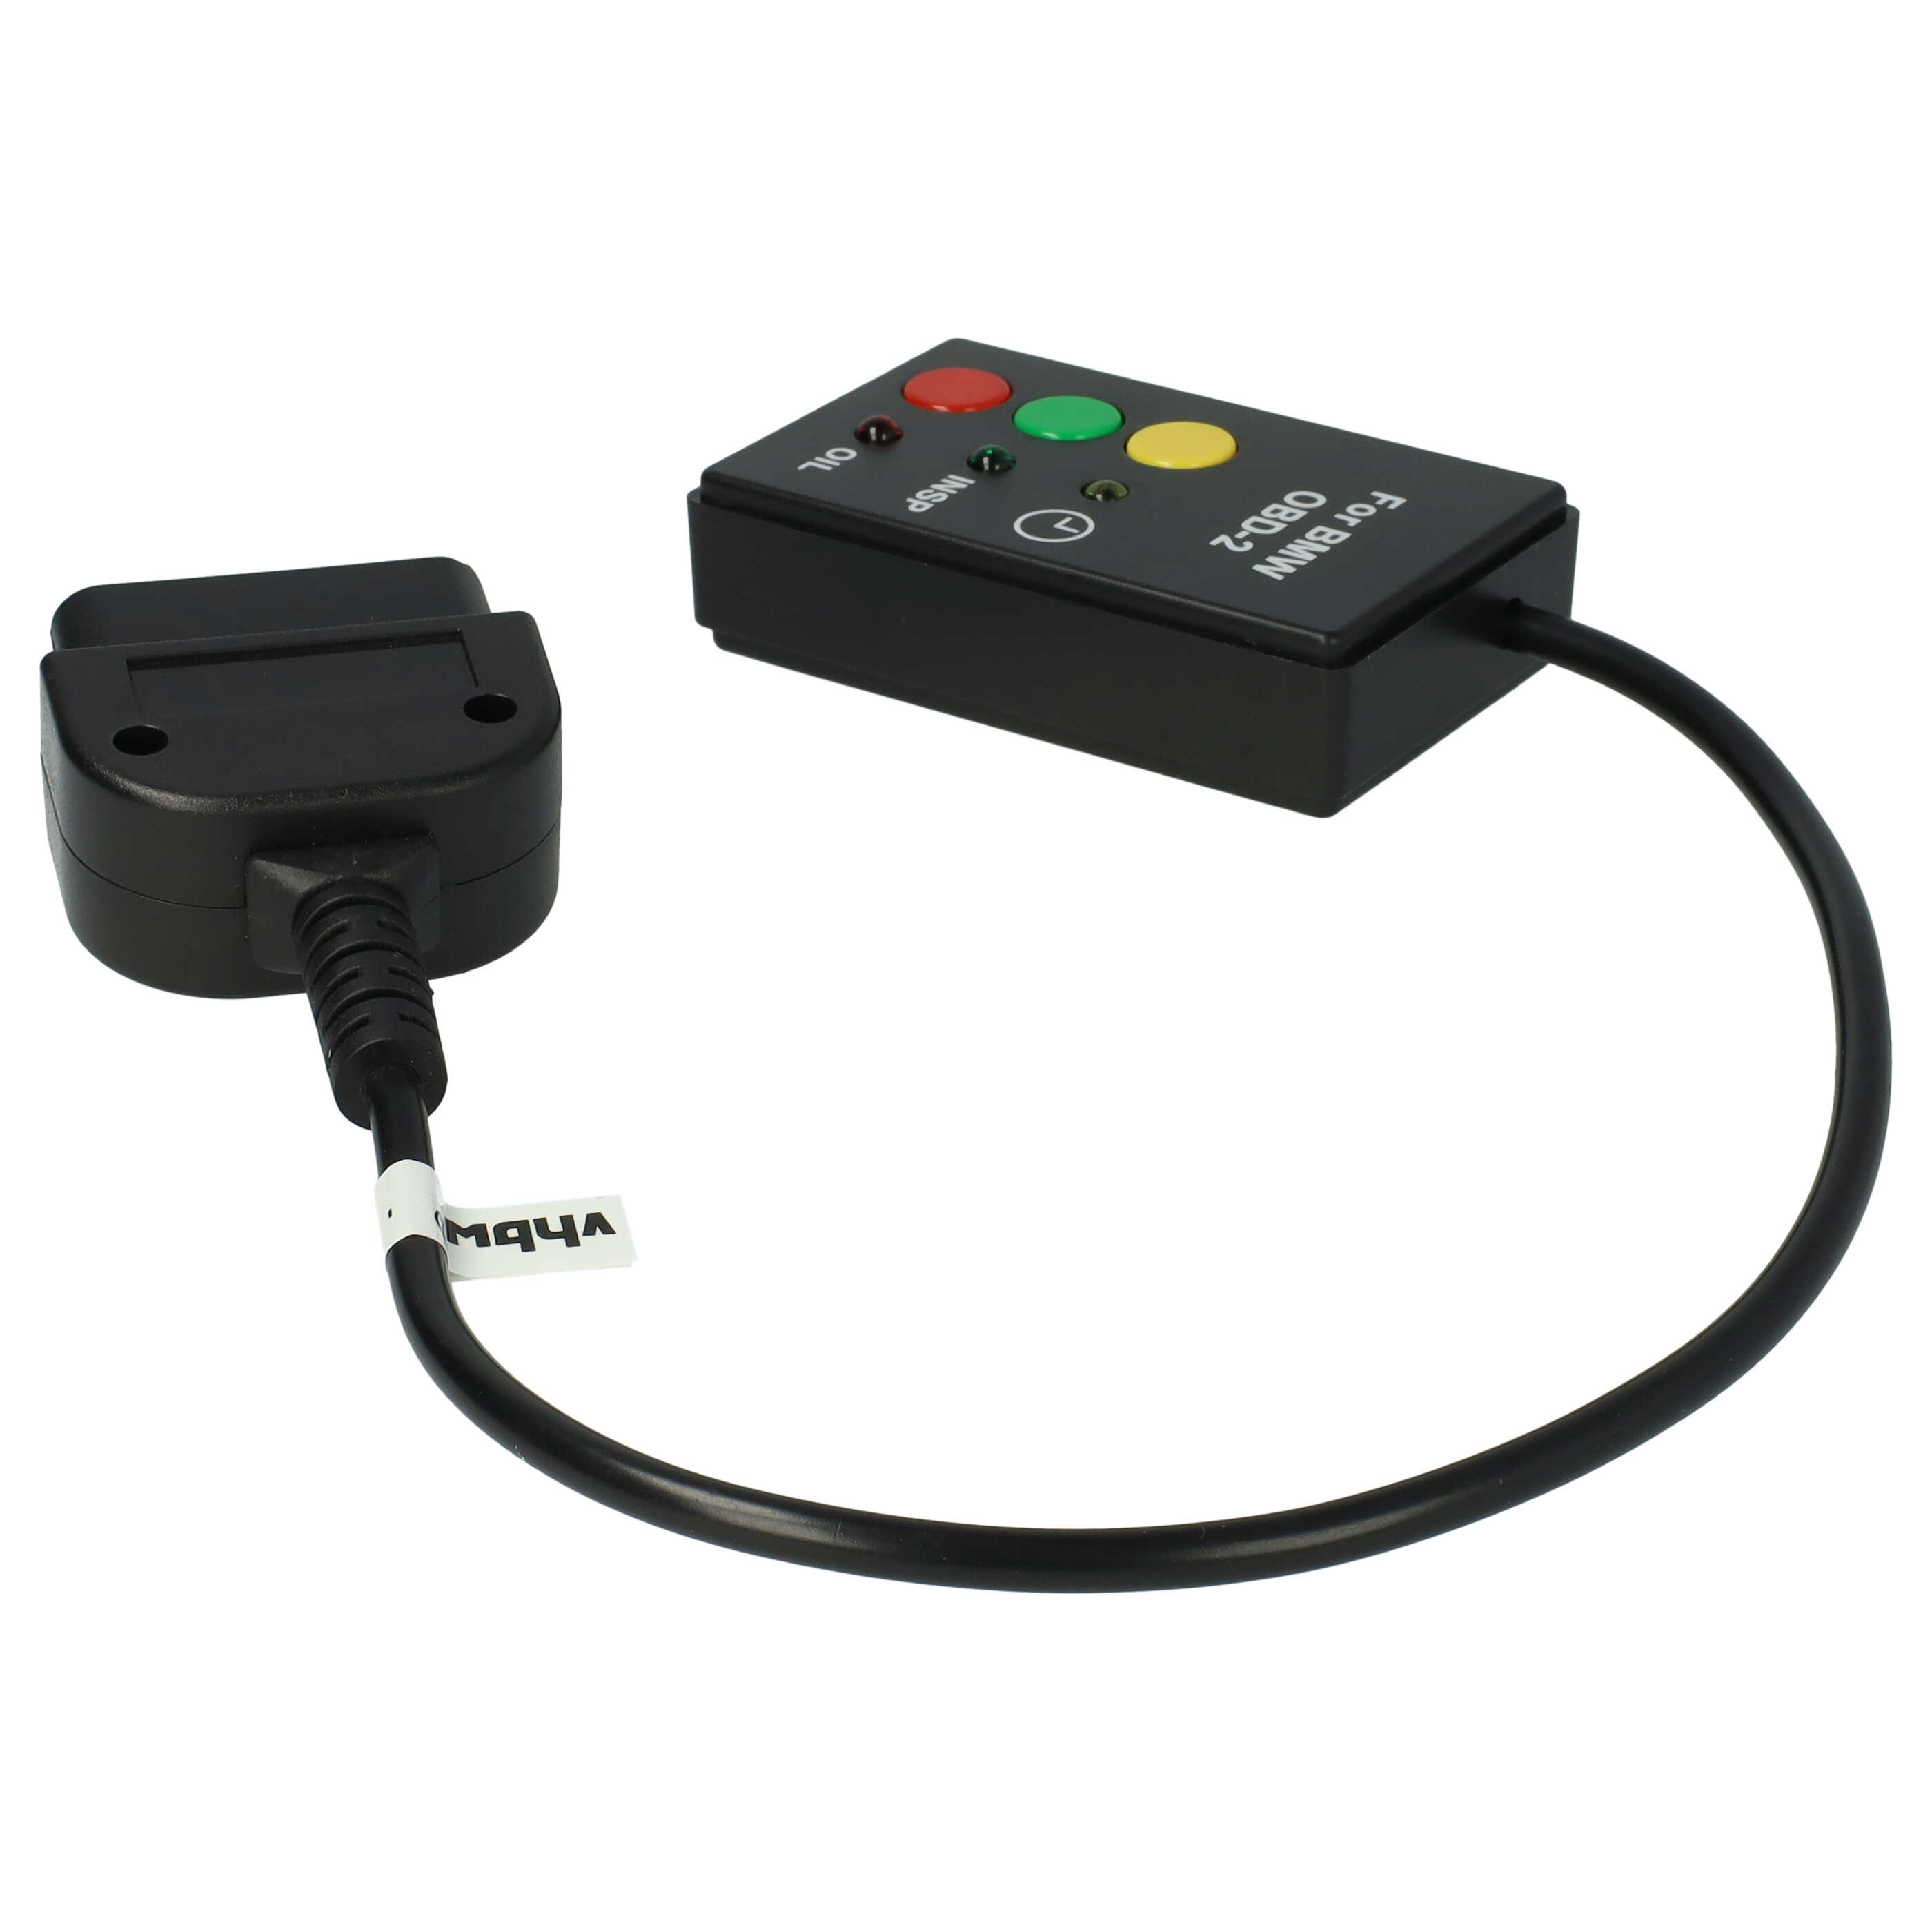 Restablecimiento indicador servicio para MINI / BMW / Rover año de fabr. 2001+ - Plug & Play - Conector OBD2